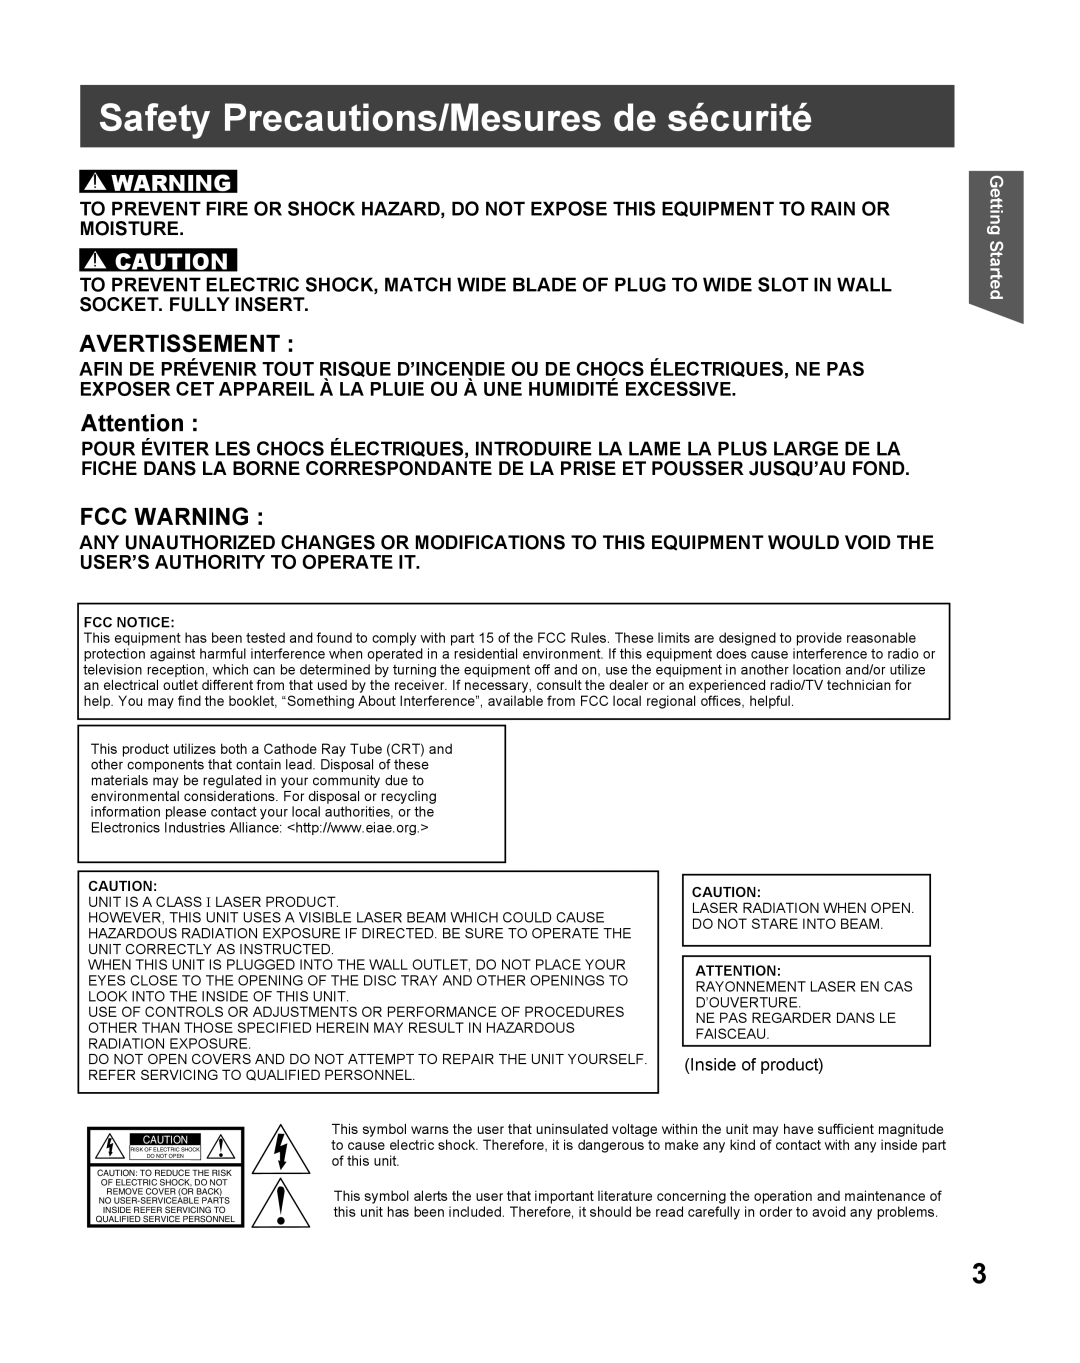 Panasonic PV-27DF5 manual Safety Precautions/Mesures de sécurité, Avertissement, Fcc Warning 